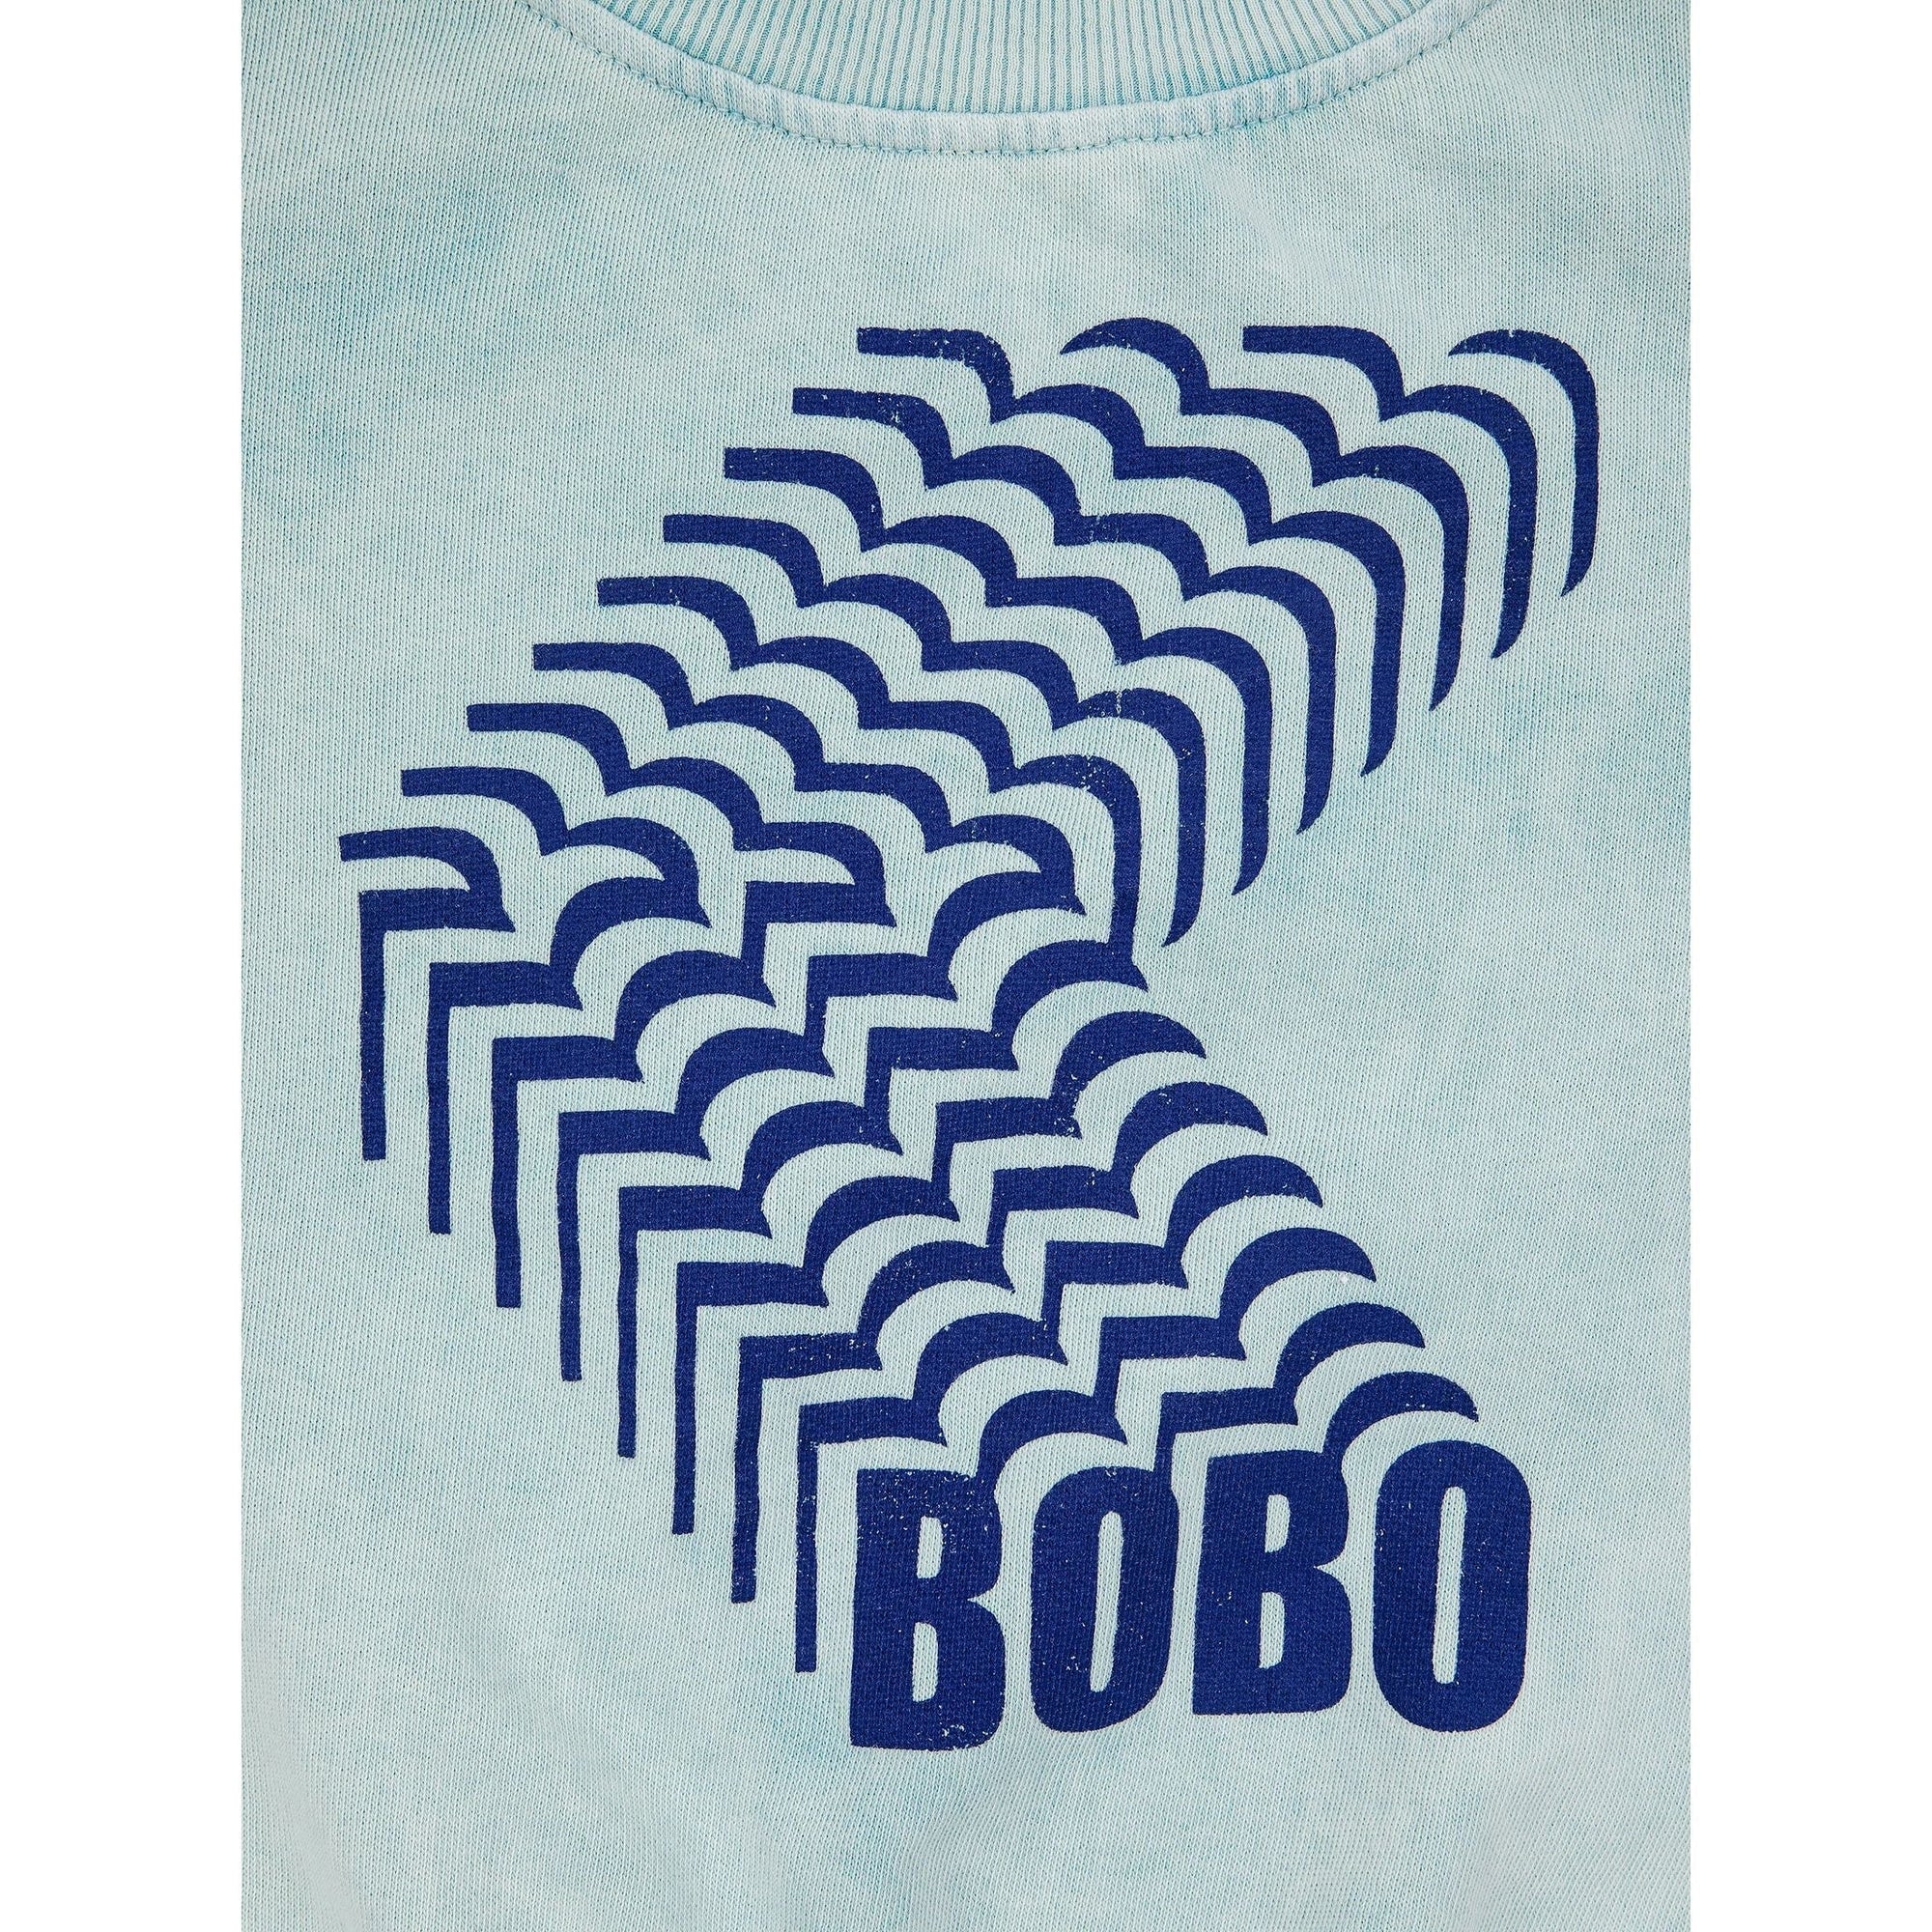 Bobo Shadow Sweatshirt